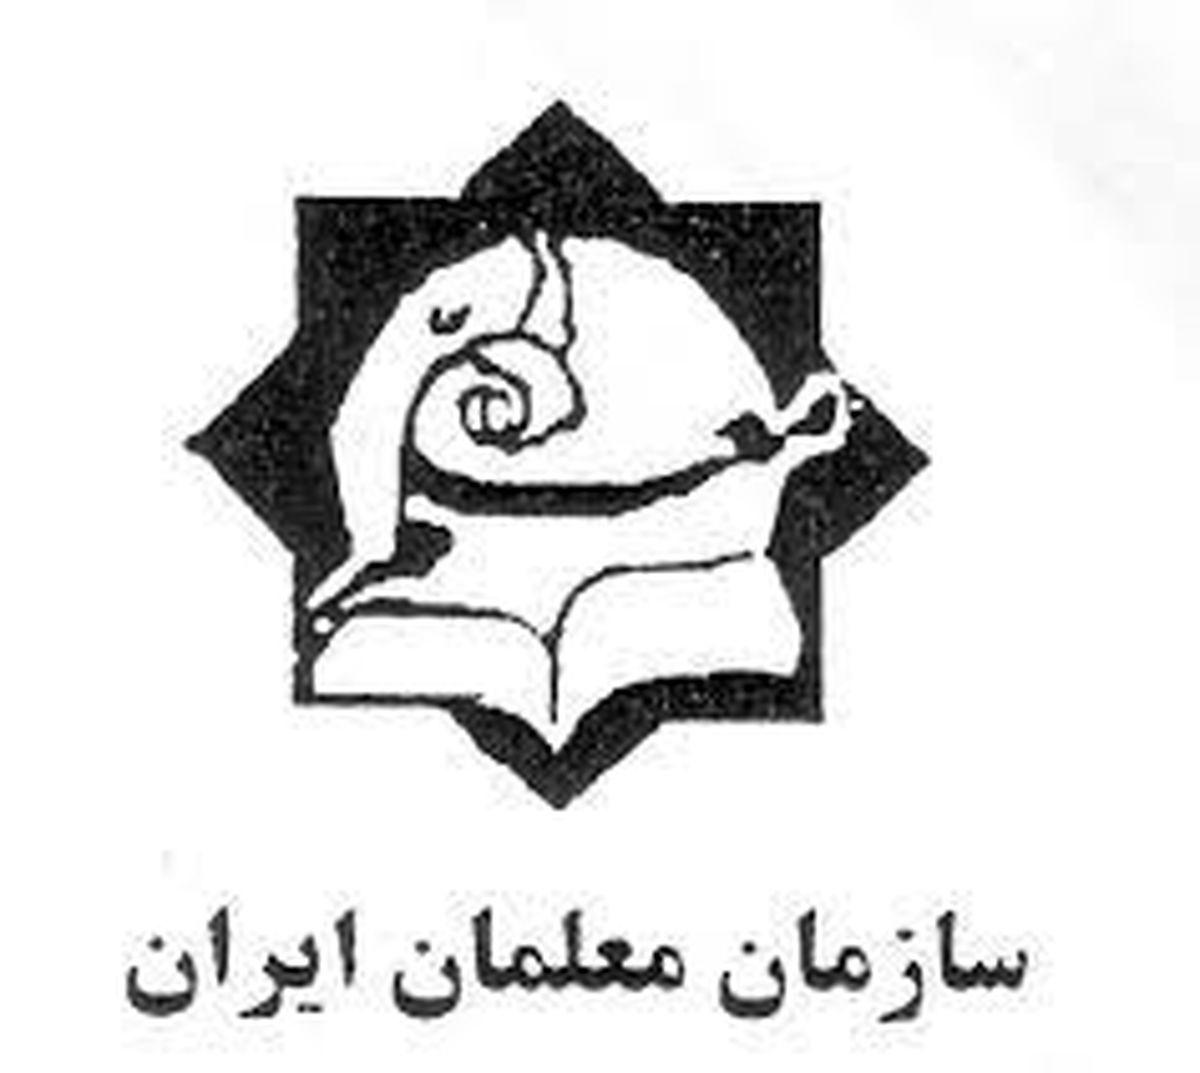 واکنش سازمان معلمان ایران به مصوبه مولدسازی